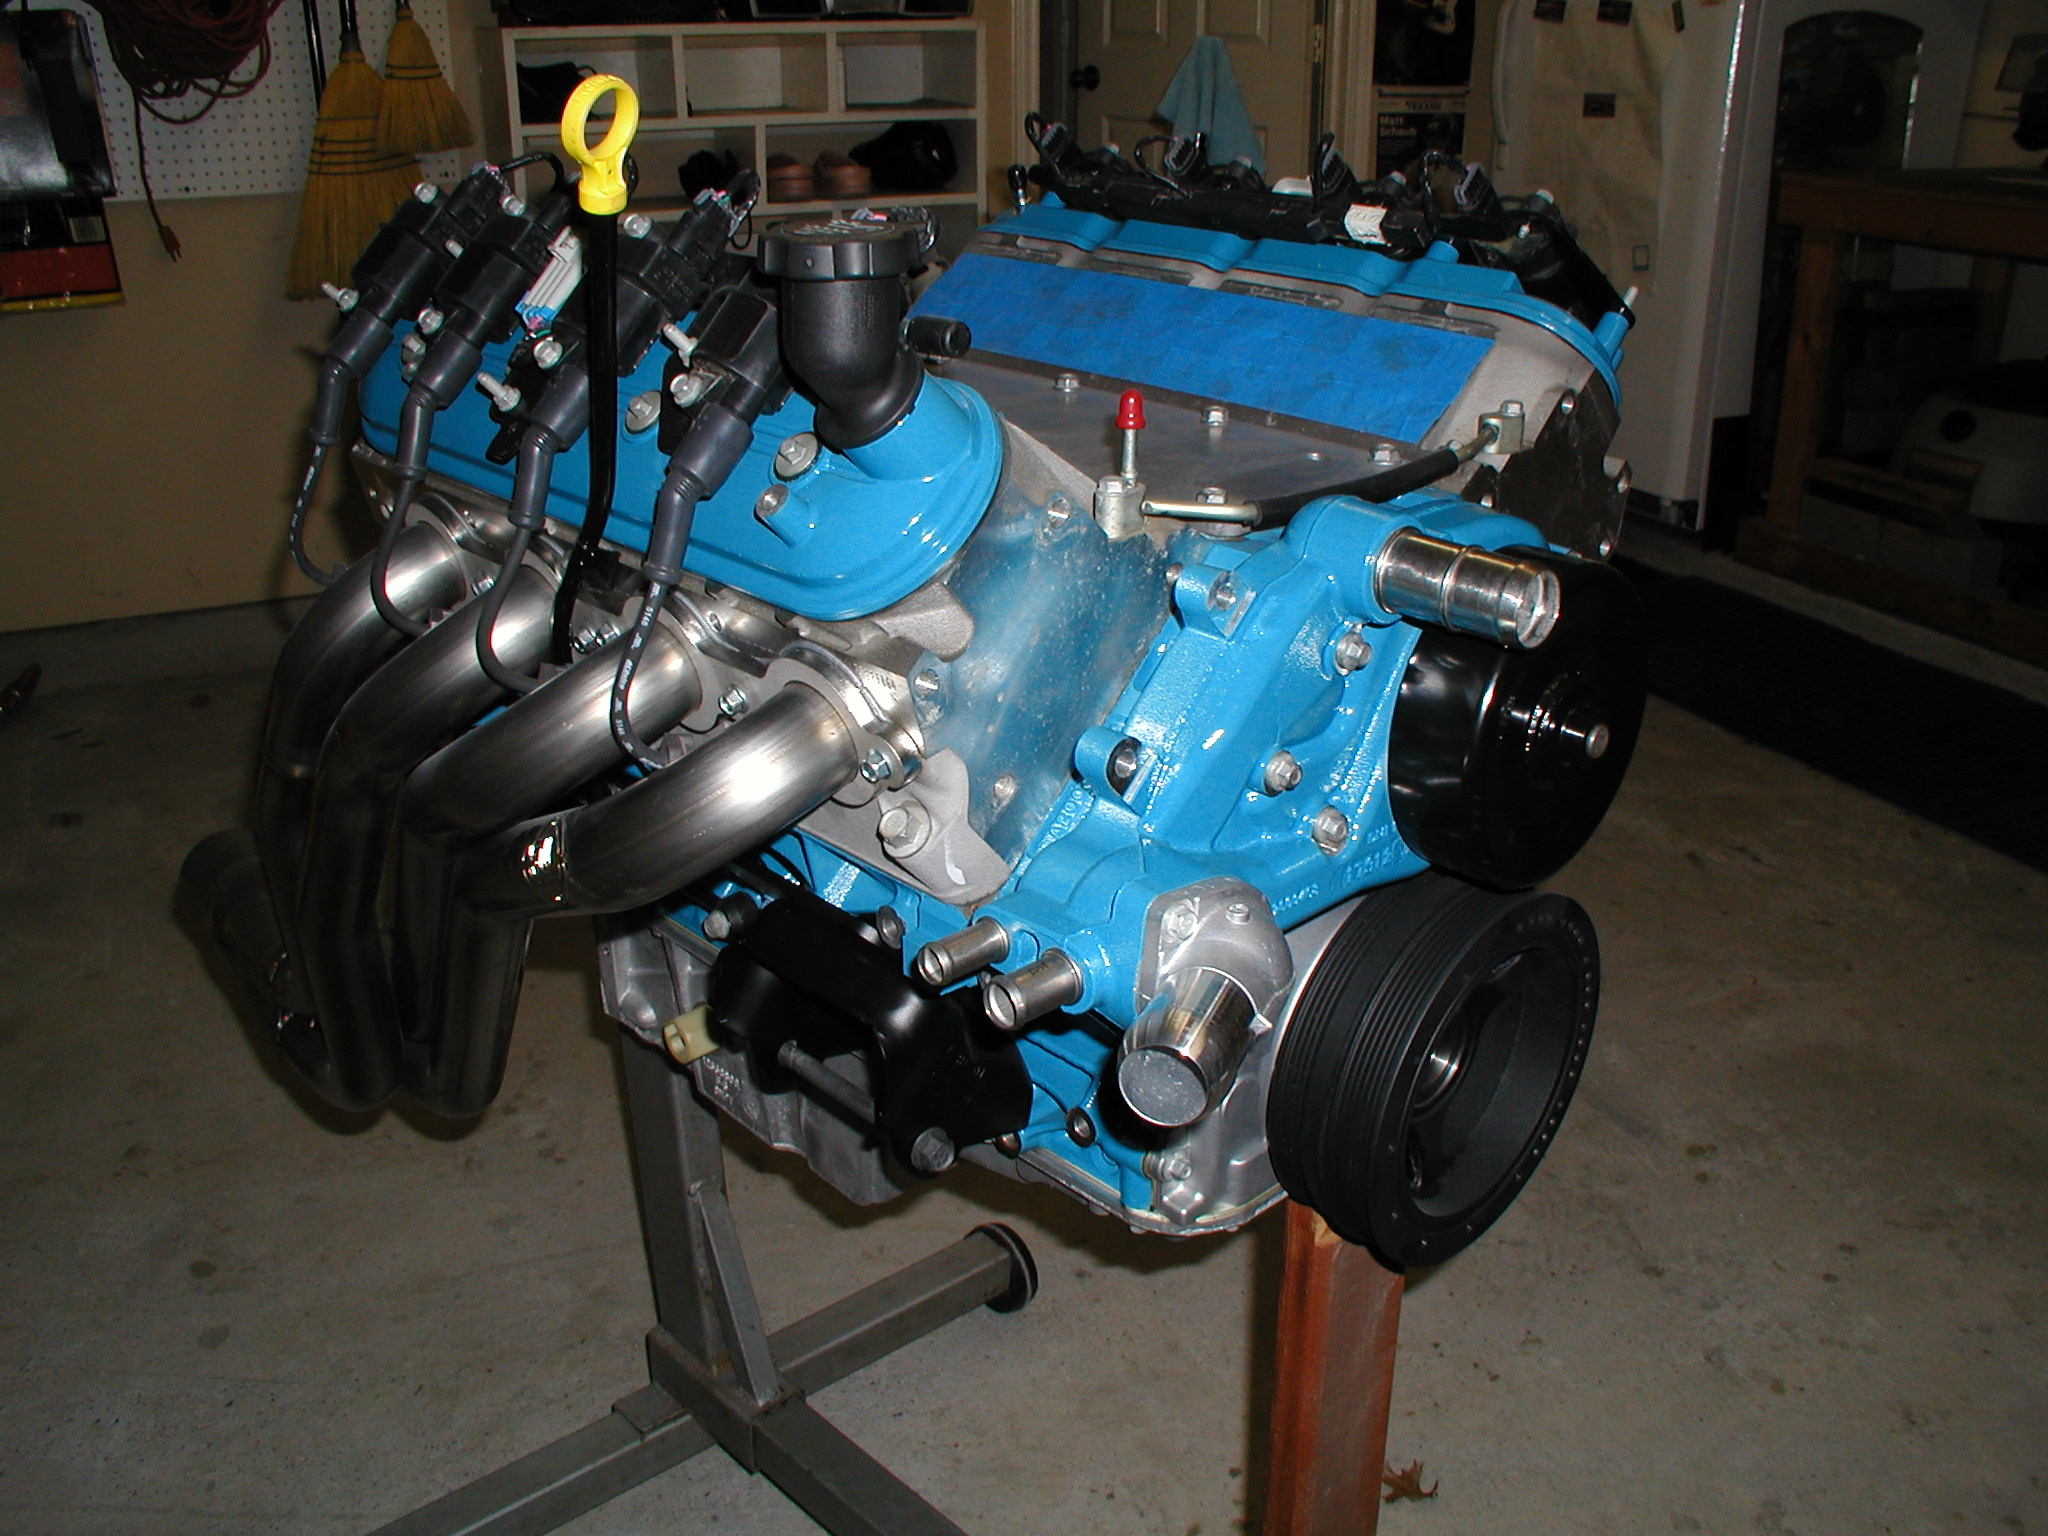 Motor mounts and water pump 3-21-2013 2.JPG